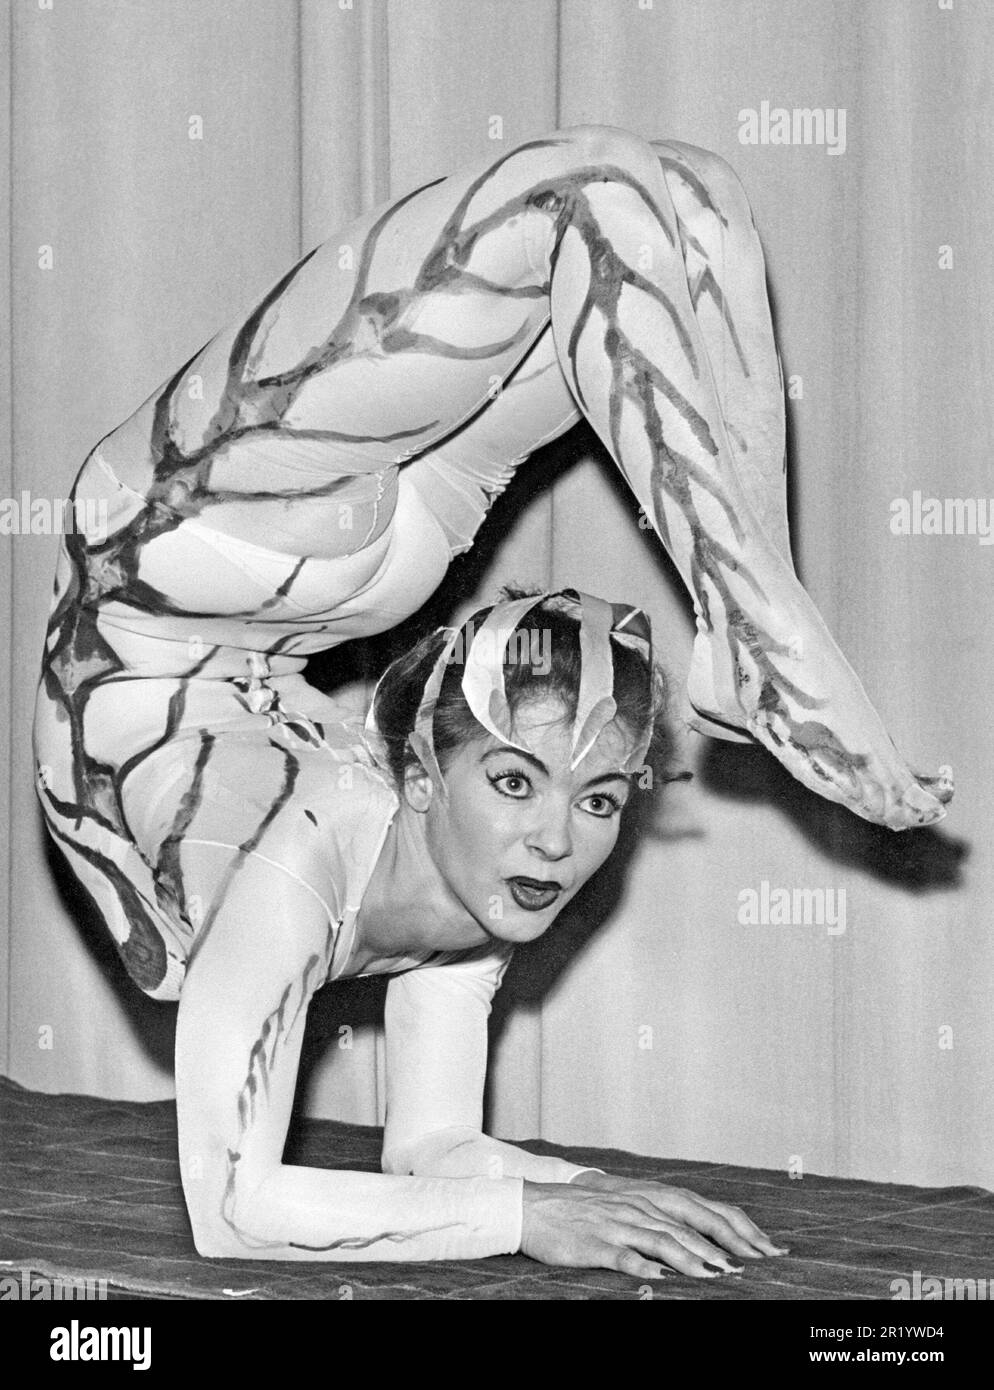 Acte acrobatique. On voit une femme se balançant sur ses bras avec ses jambes dans l'air avec les pieds devant son visage. Une performance et un contrôle de la carrosserie impressionnants dans le modèle 1950s. Suède 1953 Banque D'Images